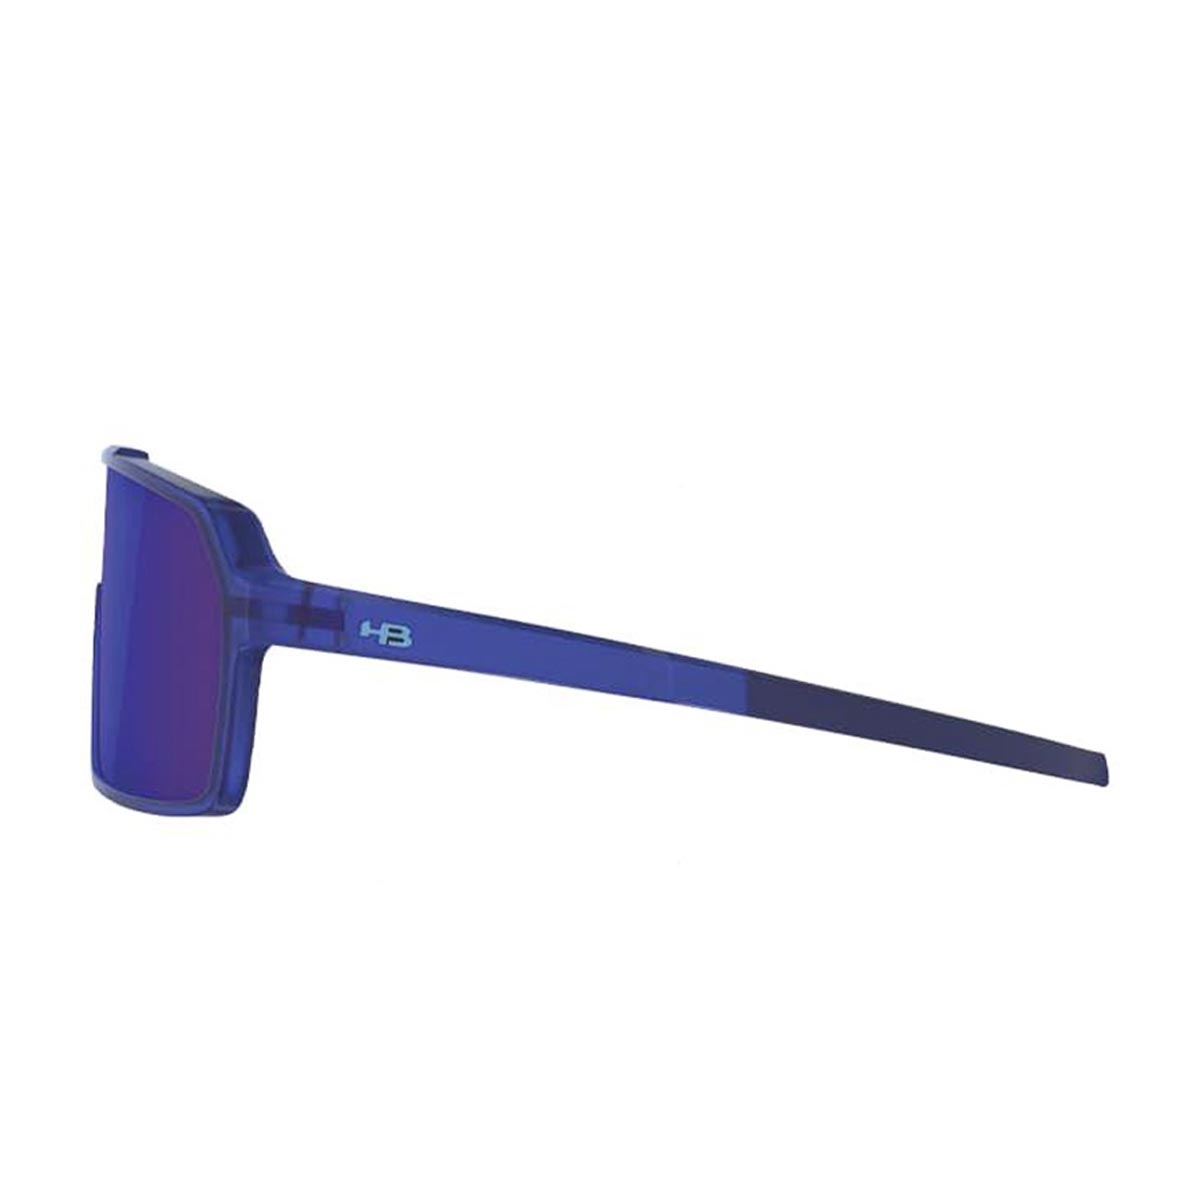 Oculos para Ciclismo HB Grinder Azul Fosco Clear Lente Azul Chrome Espelhada